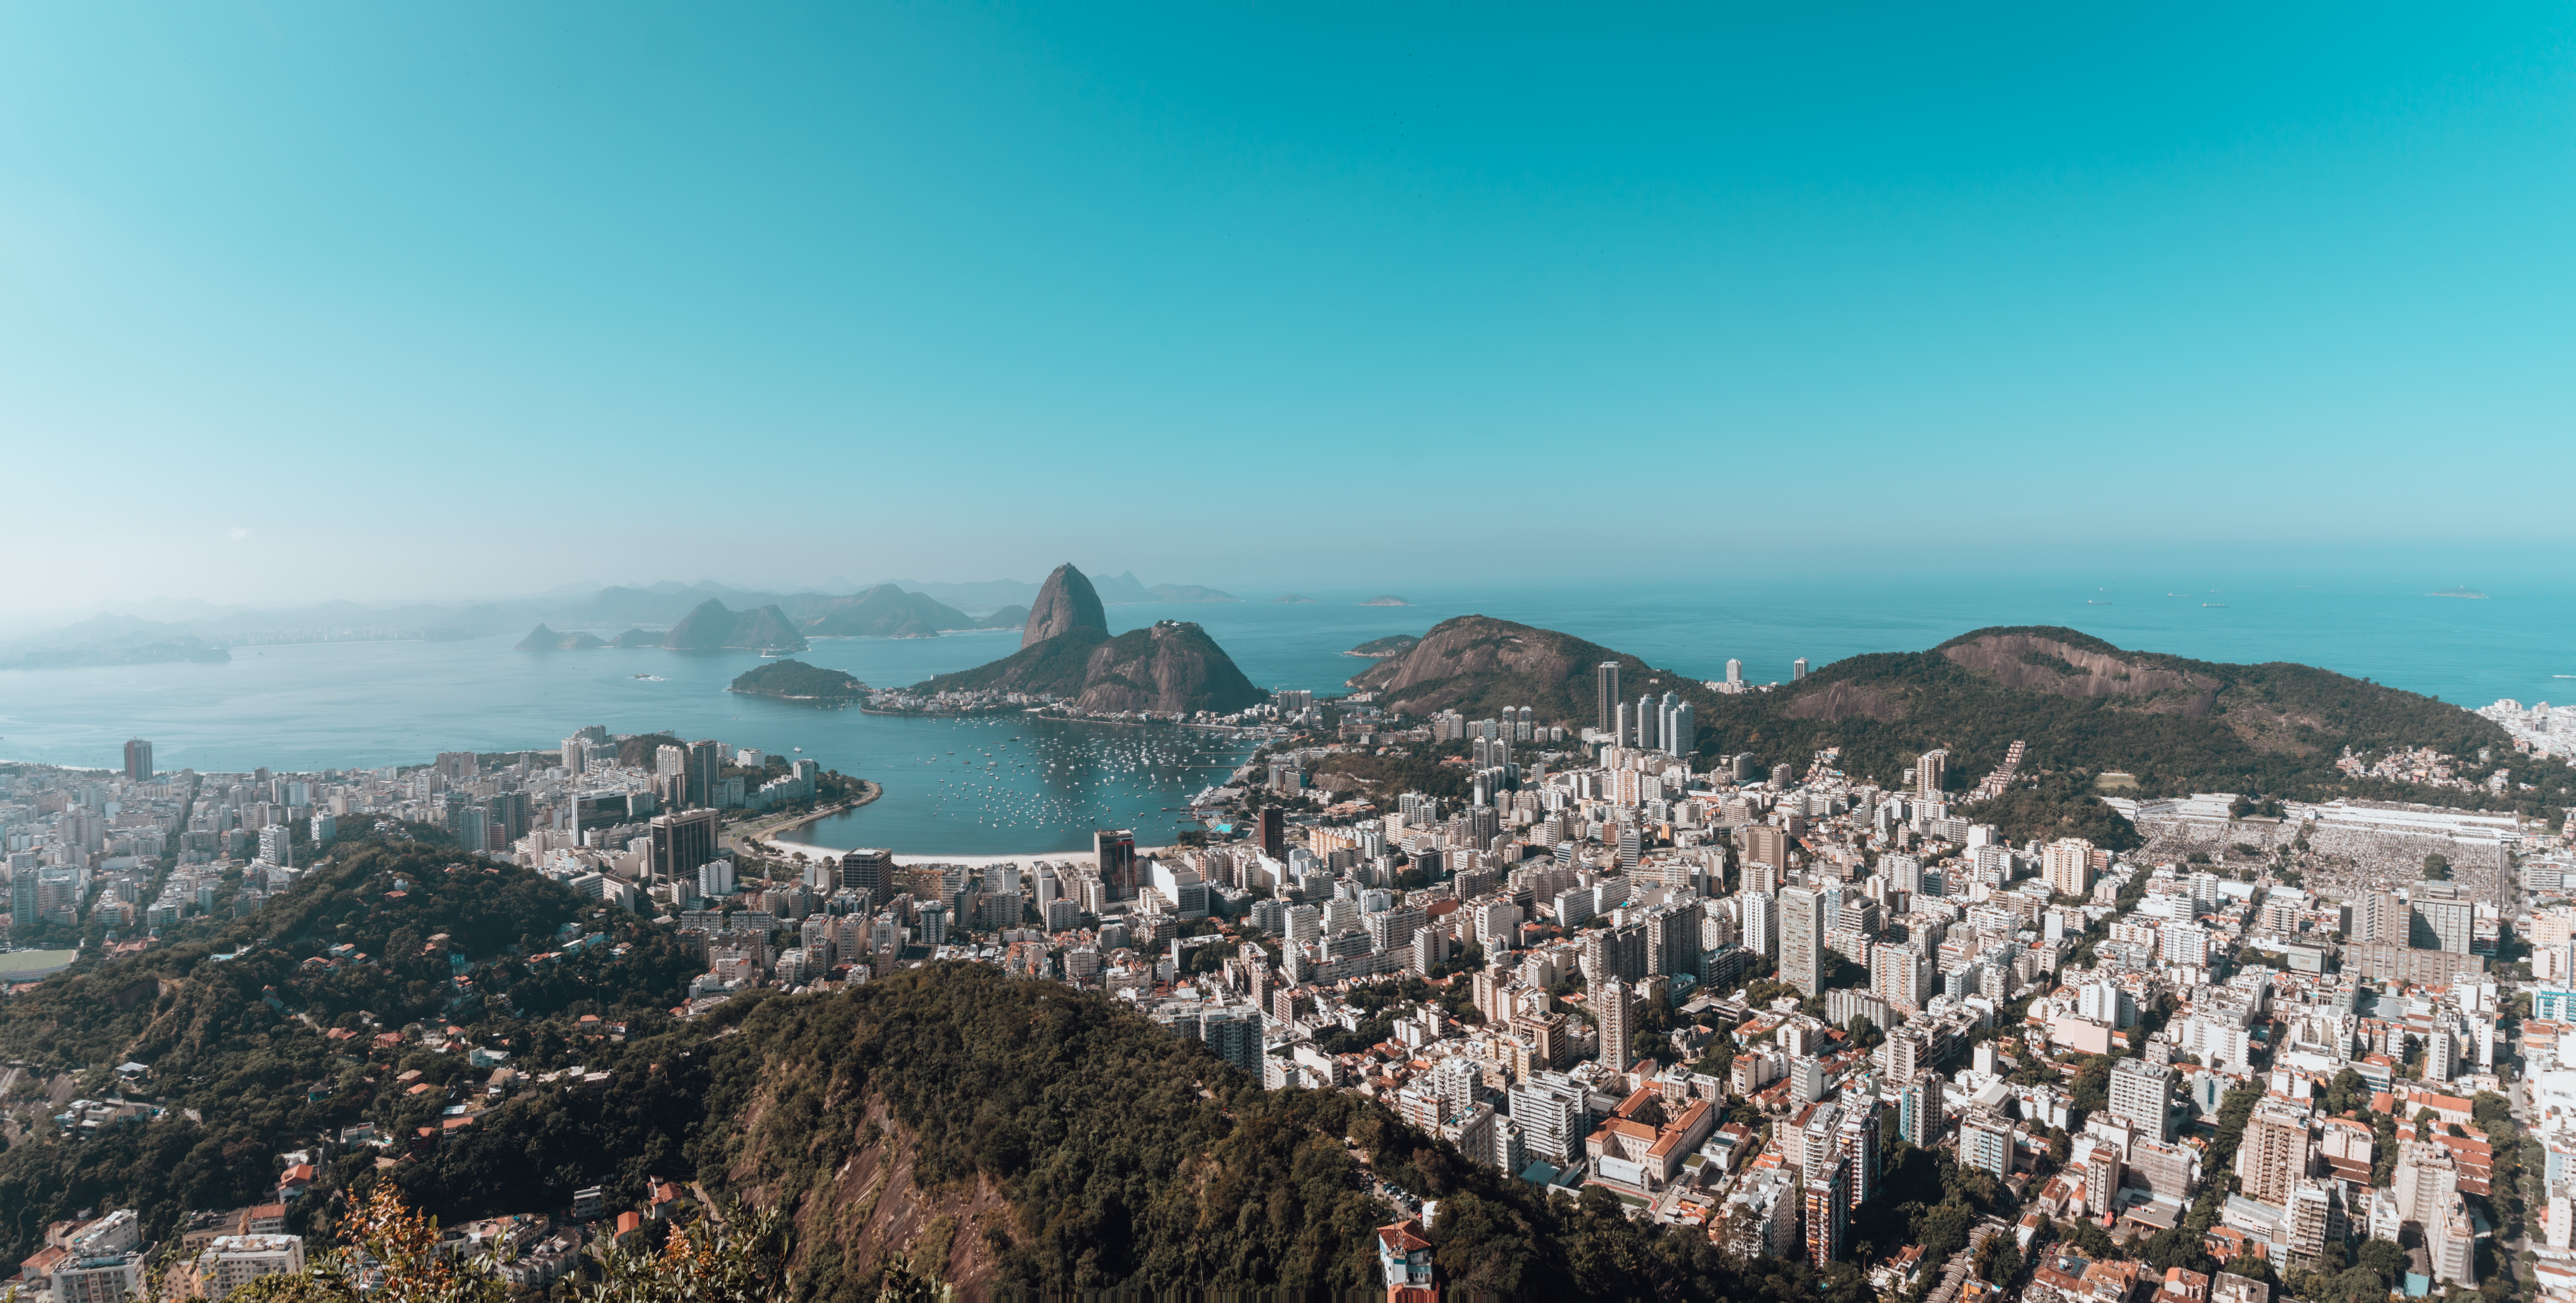 Os imóveis de alto padrão da Zona Sul  do Rio ganham uma aliada na hora da venda. Confira na entrevista com Erica Chiese, da Fico Curadoria de Imóveis